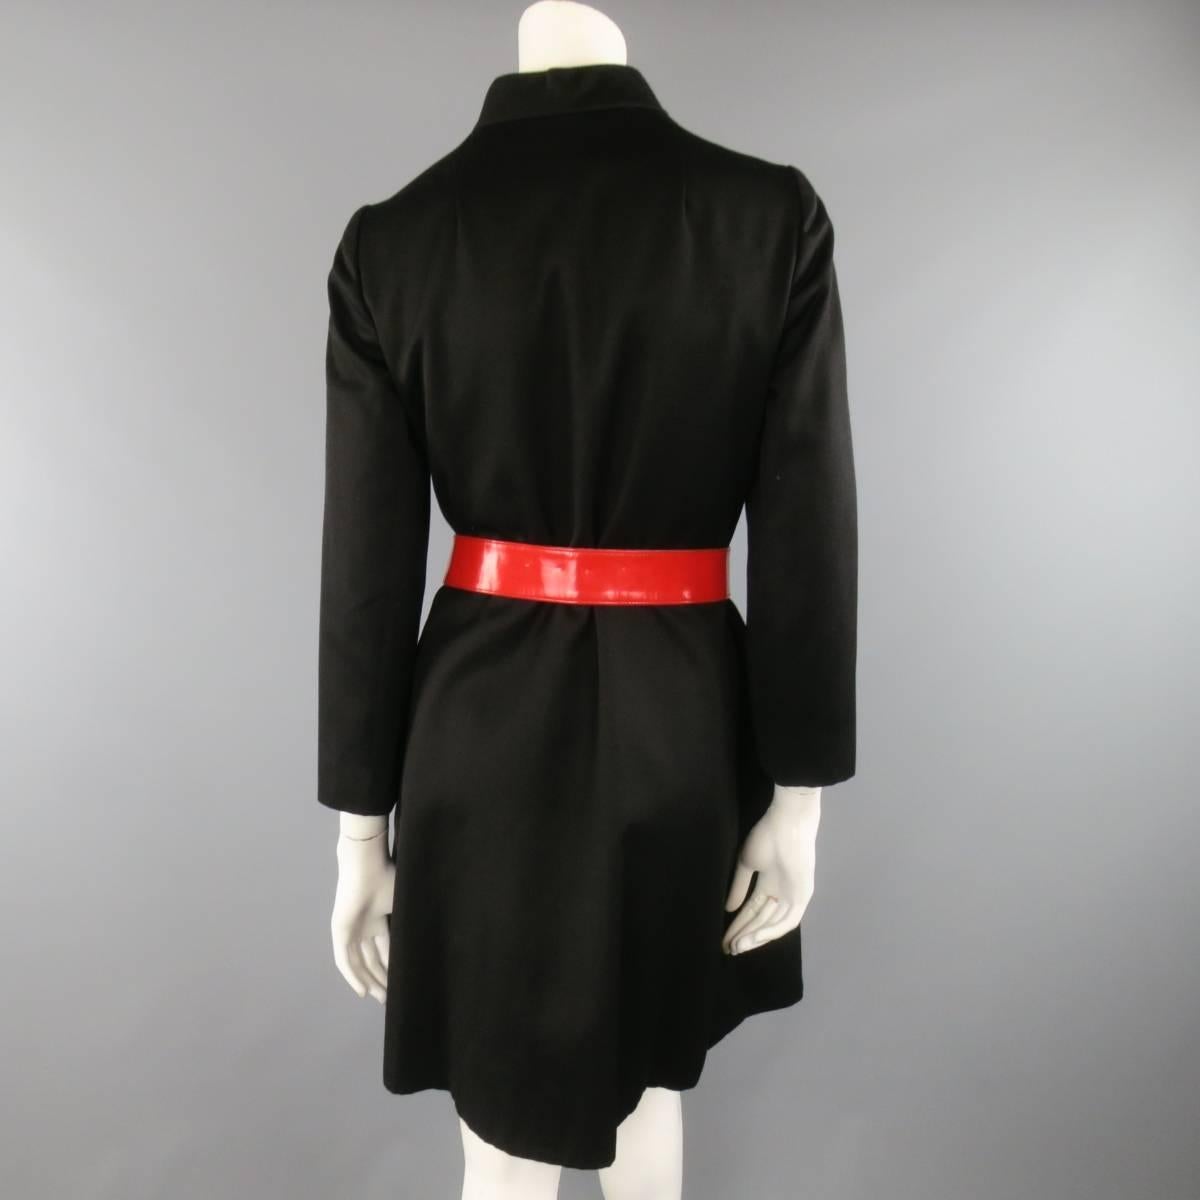 Vintage 1970s OSCAR DE LA RENTA Size S Black Red Patent Leather Trim Coat 6